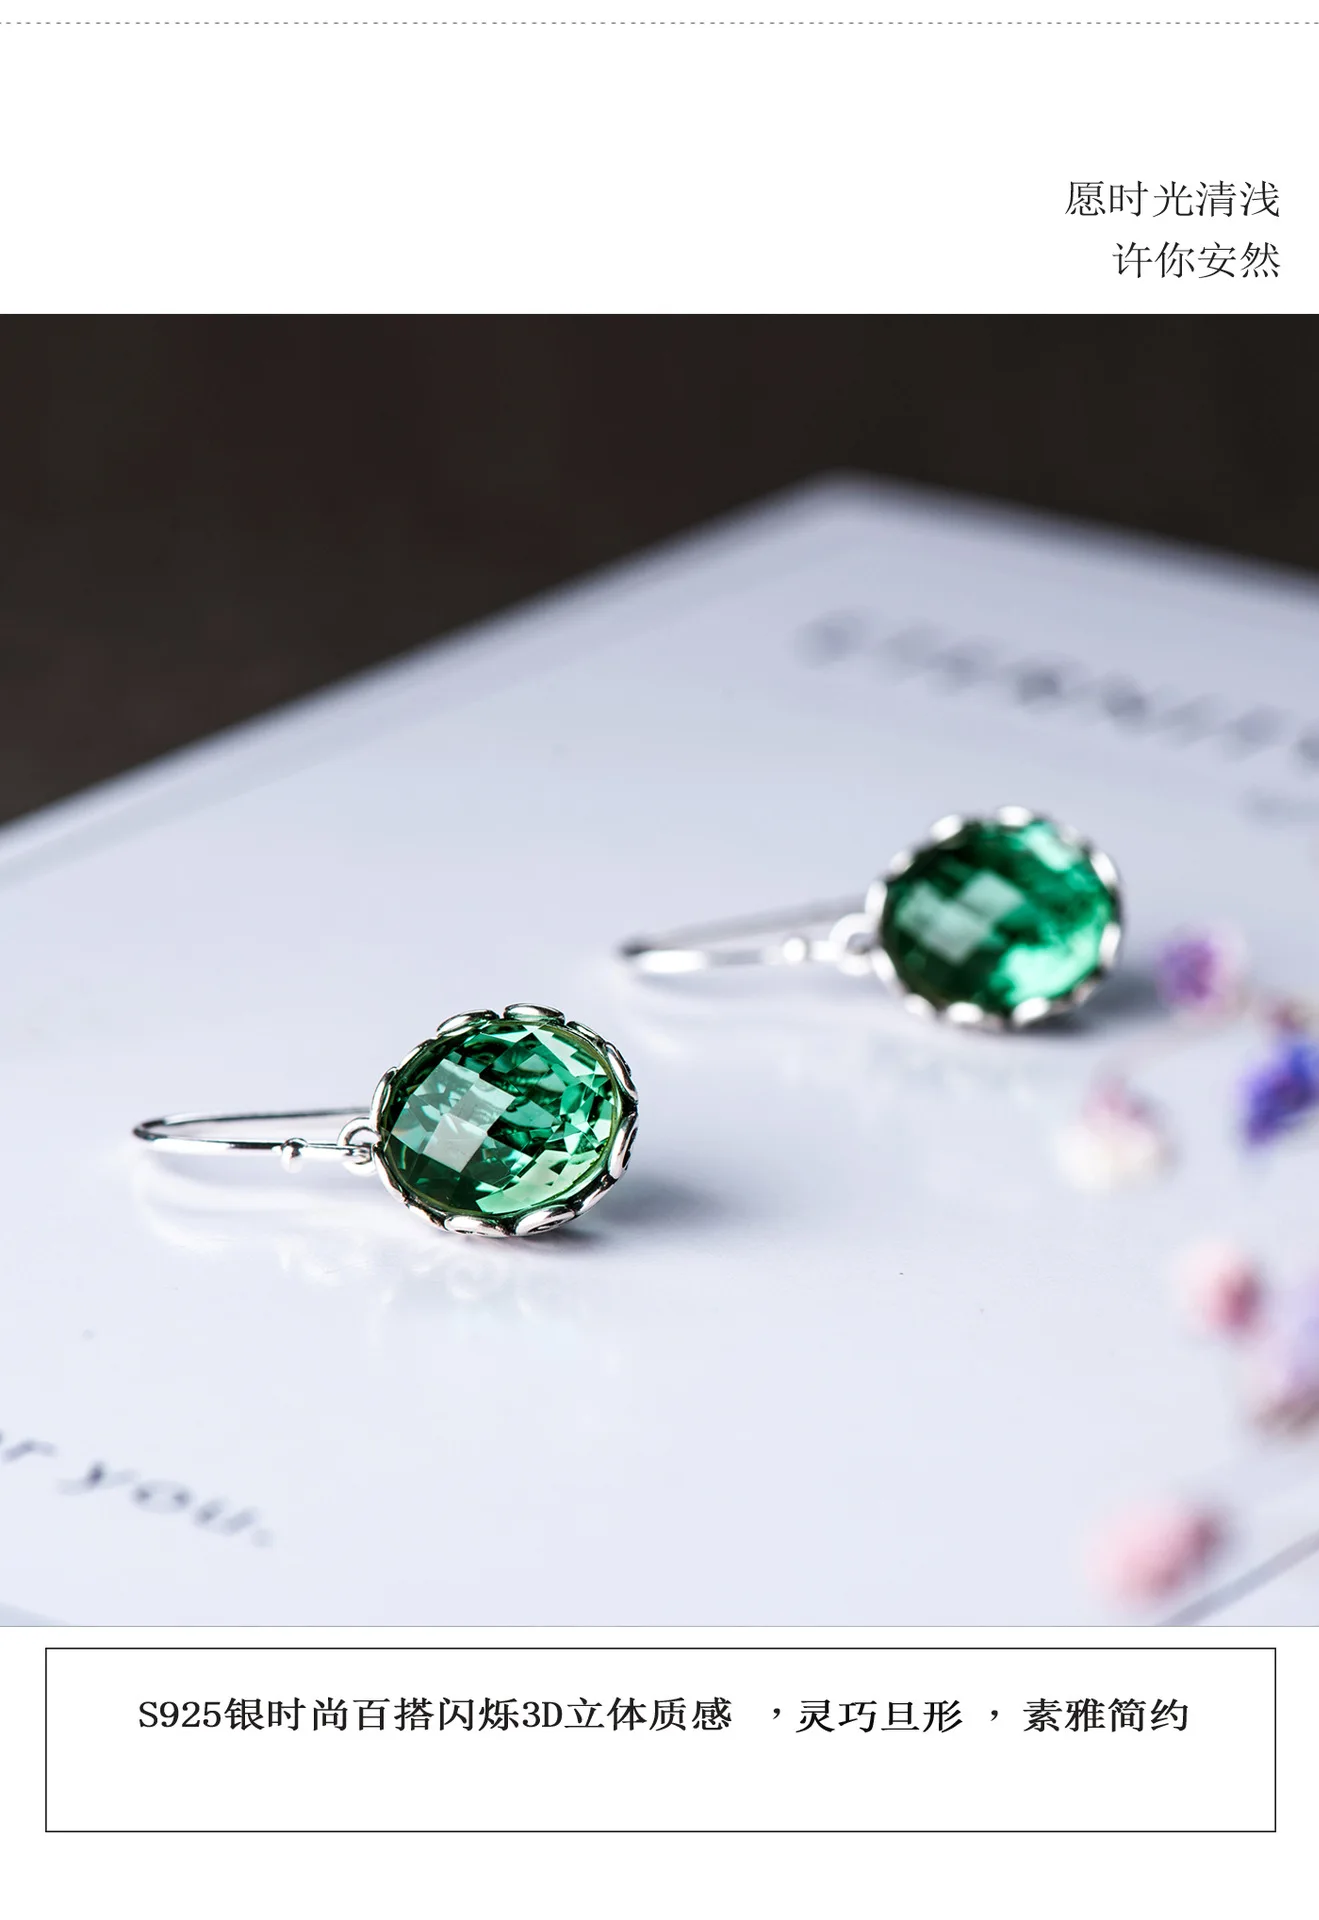 С резным зеленым кристаллом, серьги для женщин, Длинные Простые серьги из стерлингового серебра S925 пробы, модные серьги, подарок на день рождения